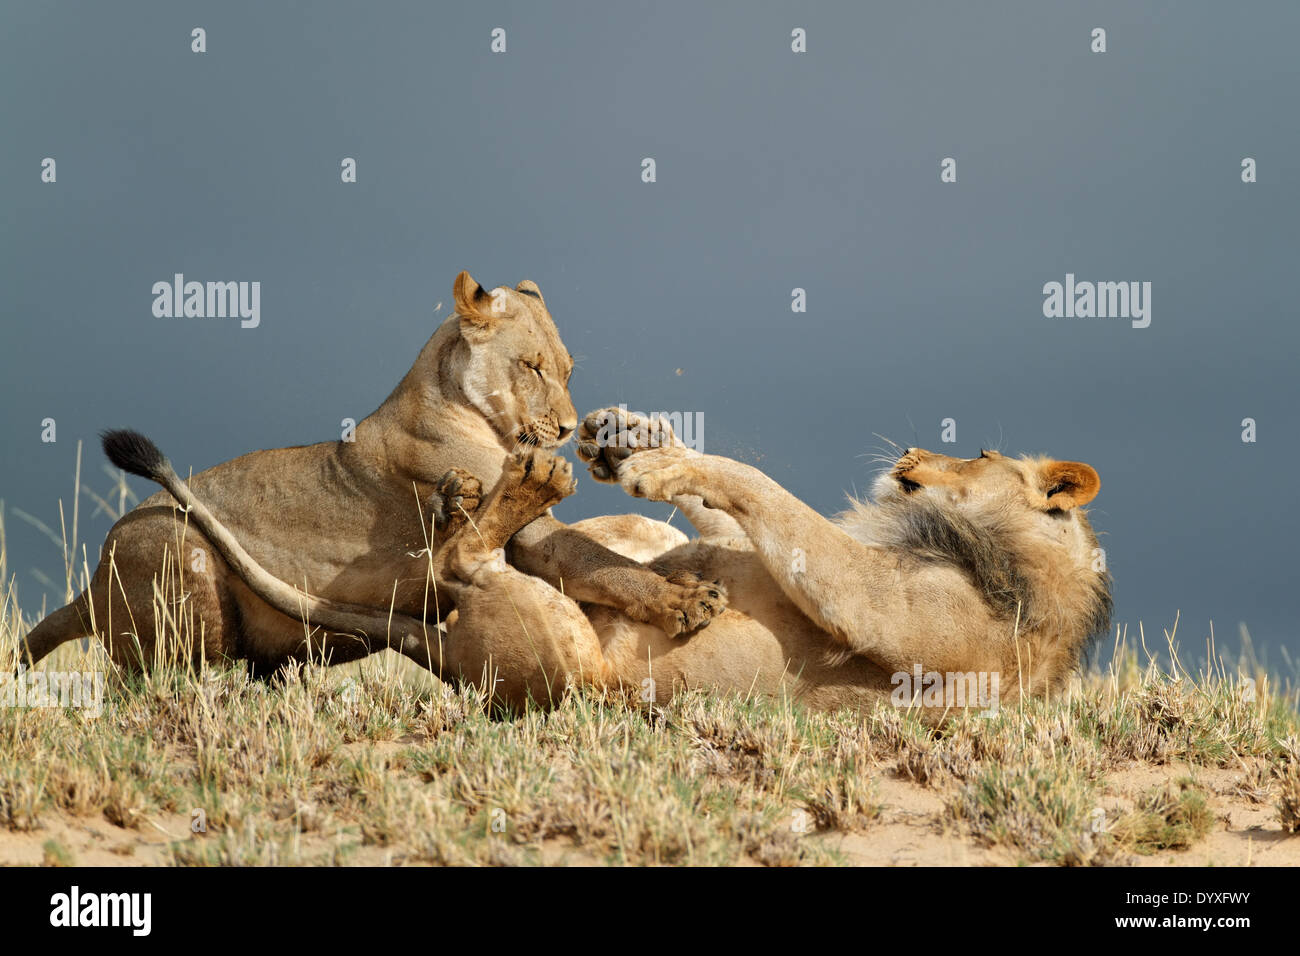 Jeune africain ludique des lions (Panthera leo), désert du Kalahari, Afrique du Sud Banque D'Images